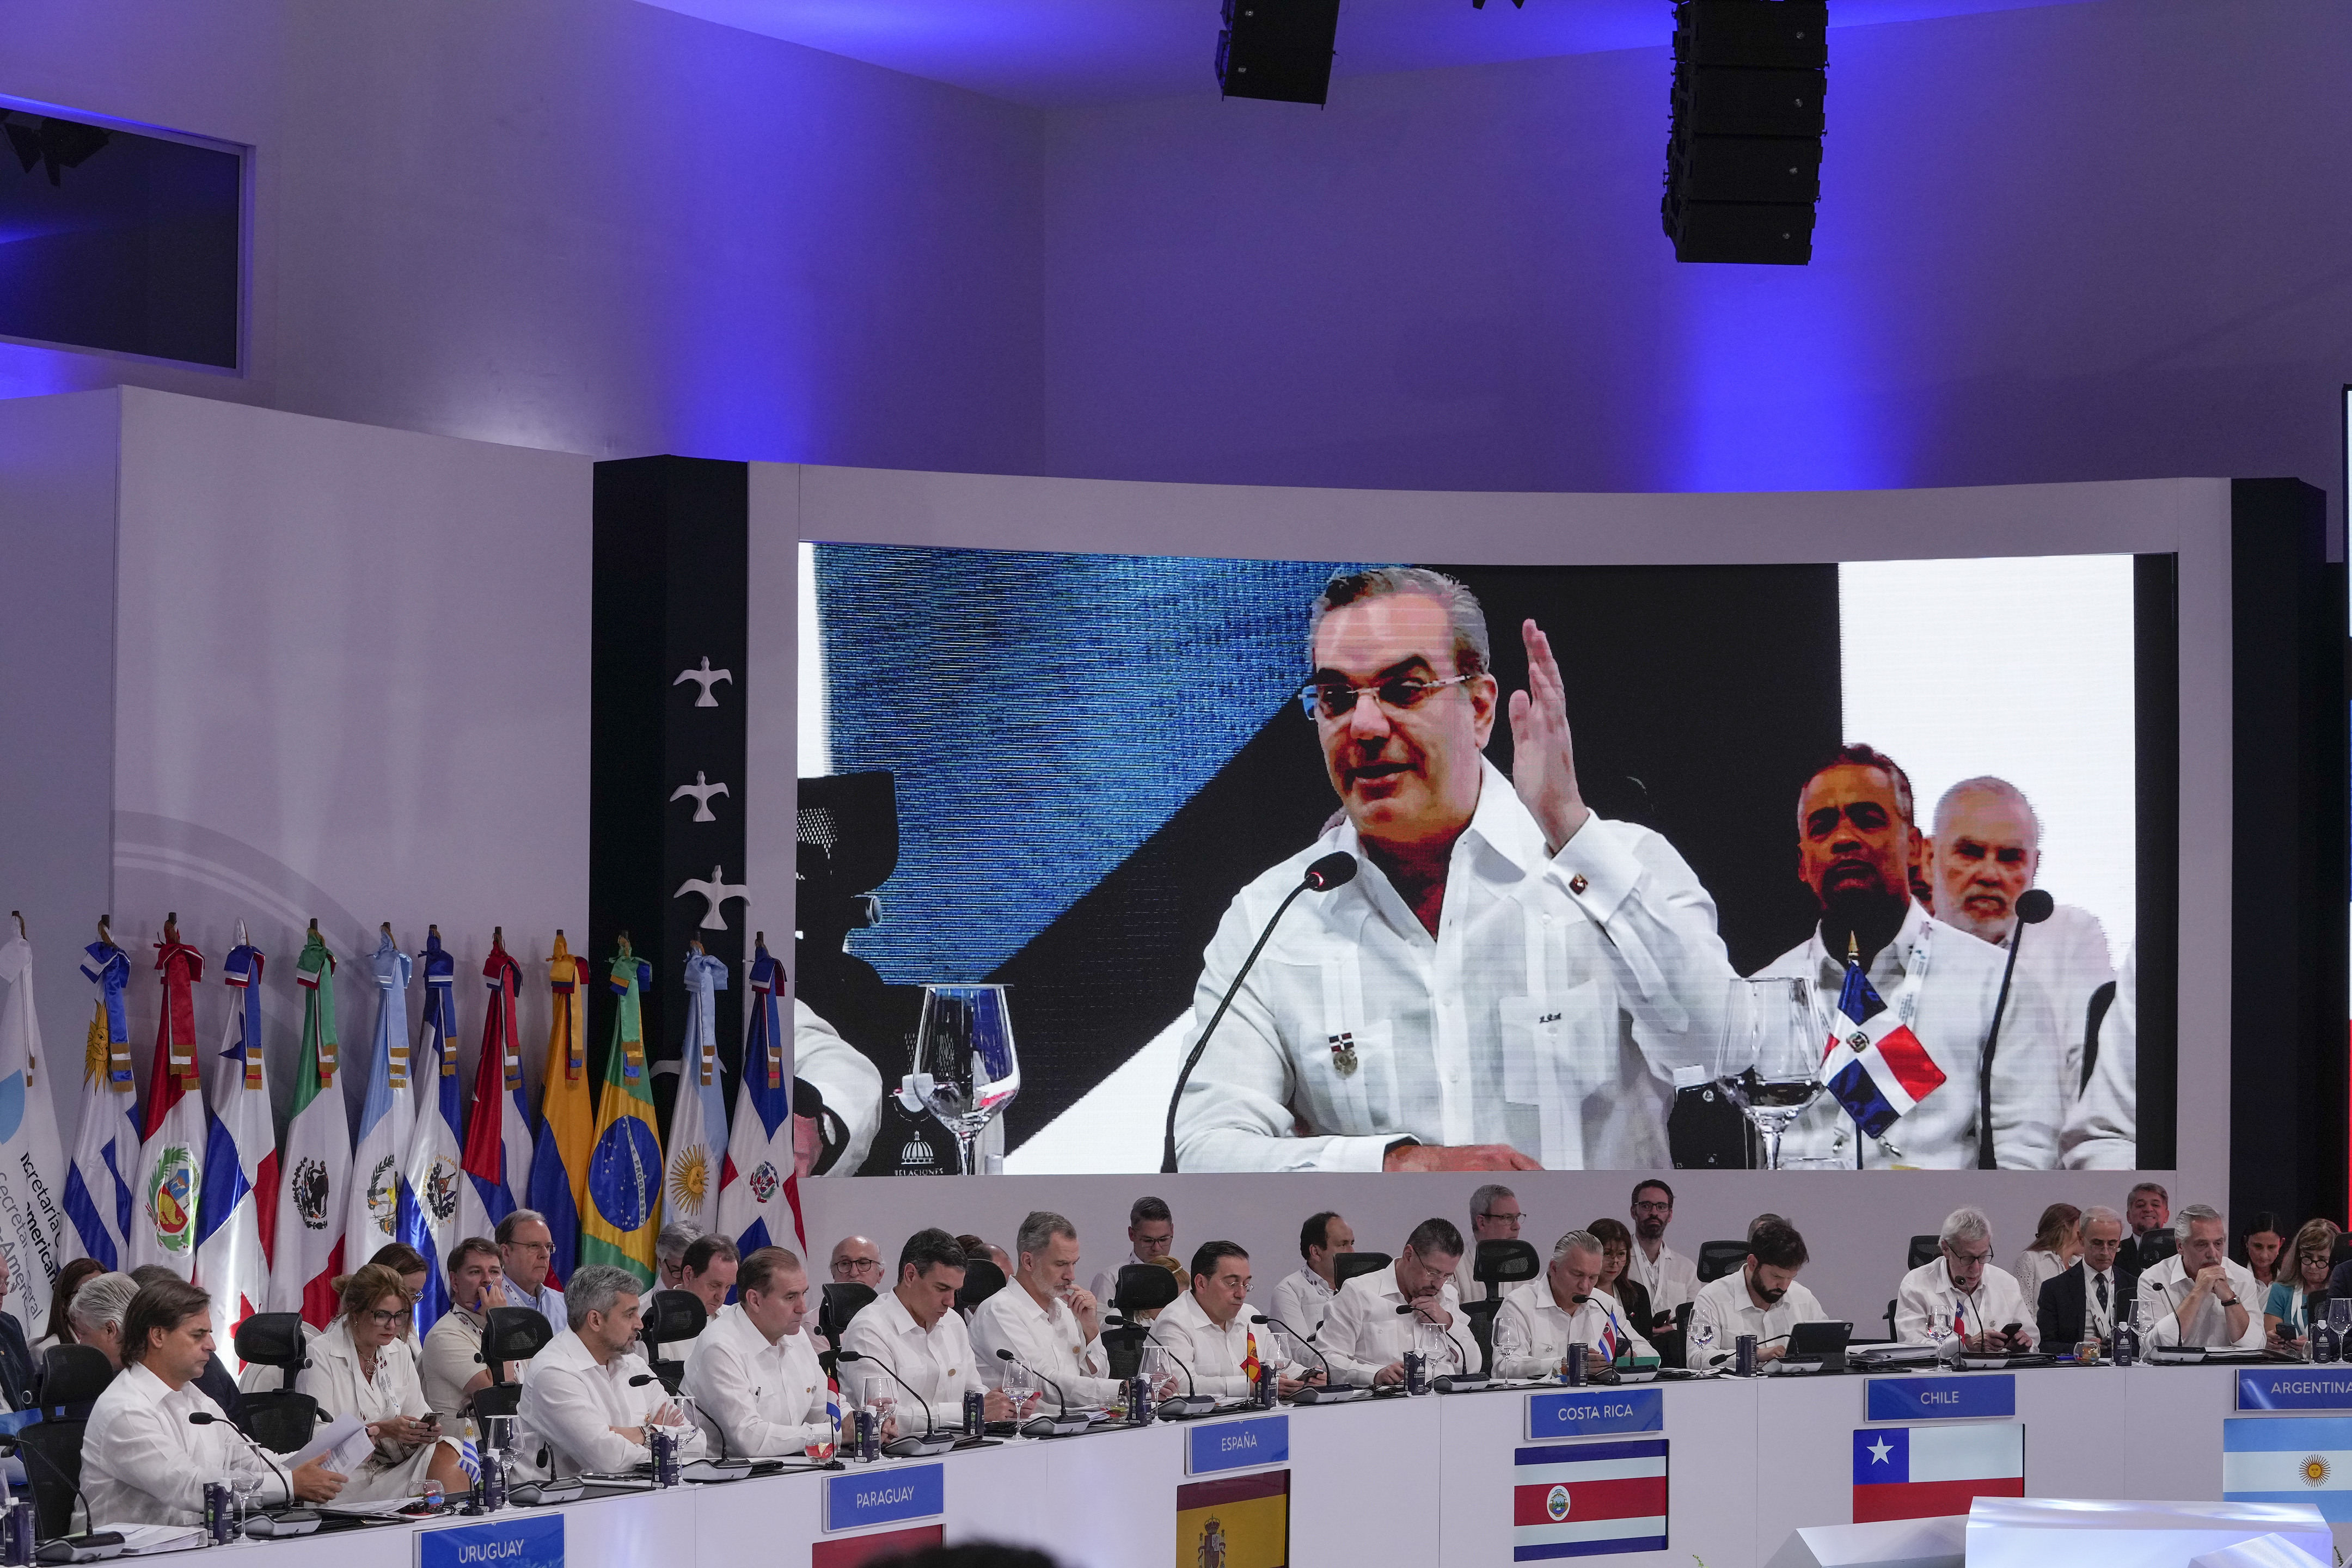 Líderes iberoamericanos escuchan el discurso del presidente de República Dominicana, Luis Abinader, en la pantalla, durante la sesión de la 28va Cumbre Iberoamericana, en Santo Domingo, República Dominicana, el sábado 25 de marzo de 2022. (Foto AP/Ariana Cubillos)